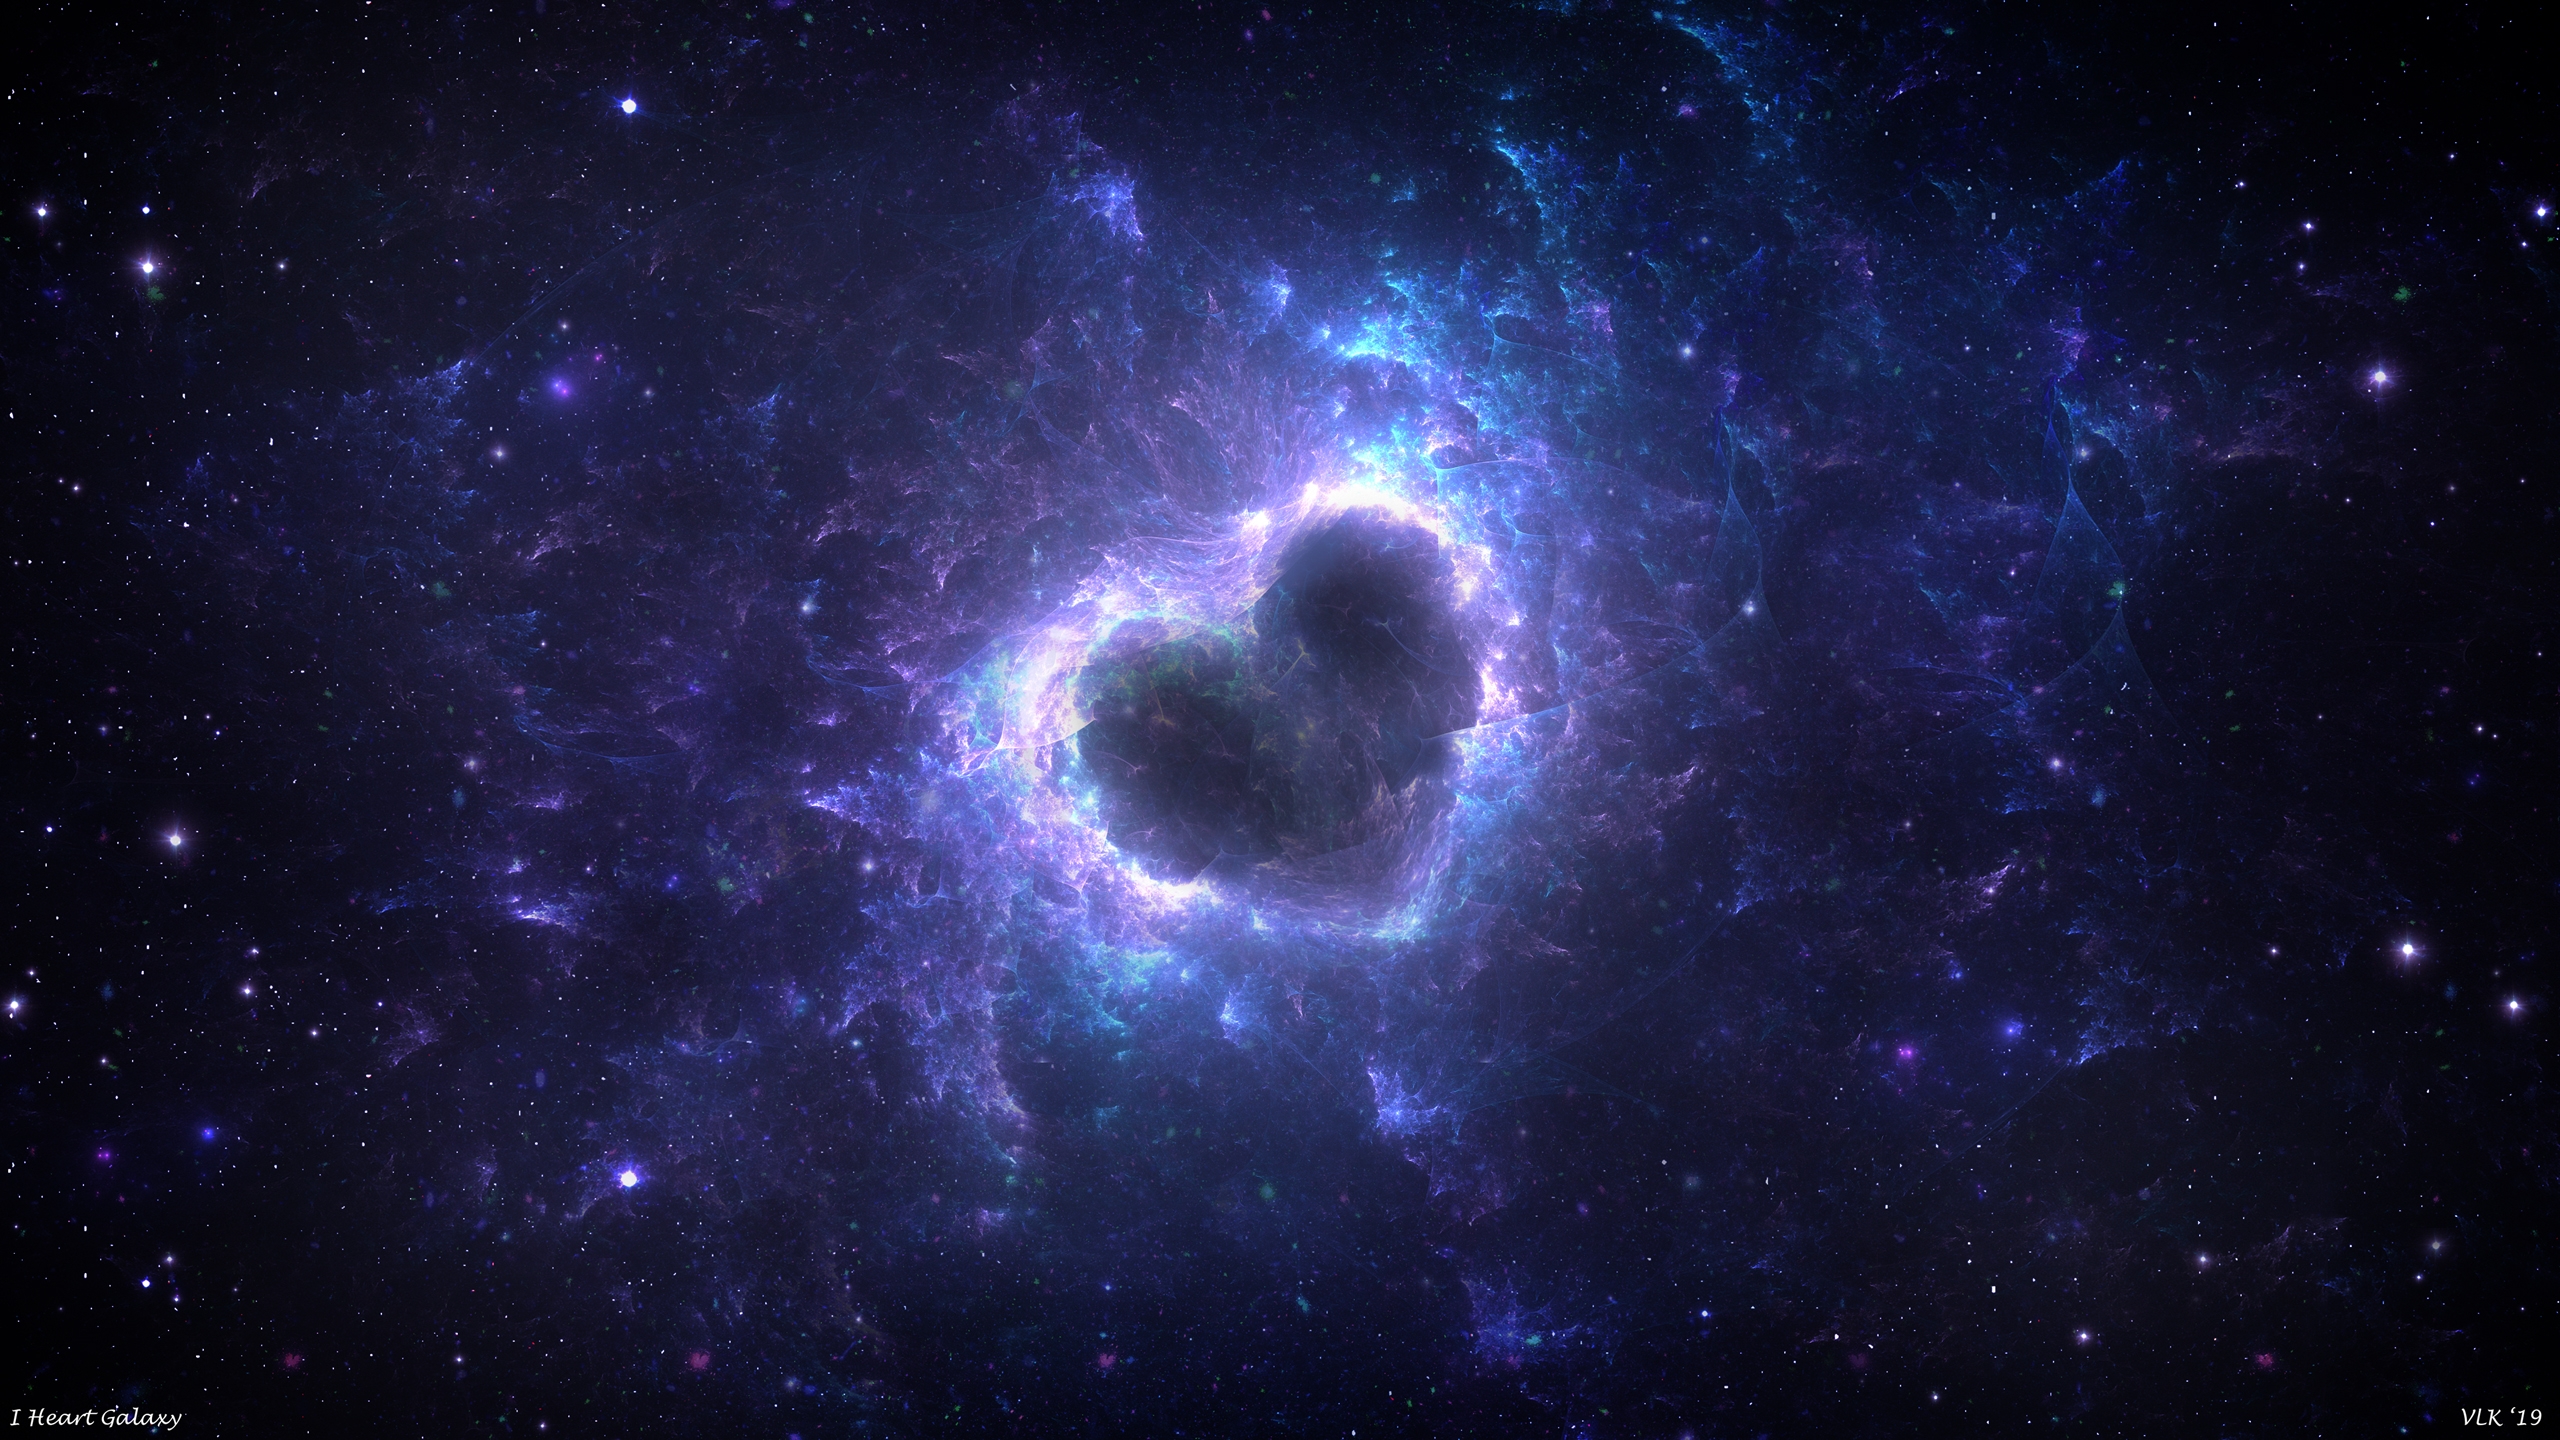 Heart-shaped space nebula in purple